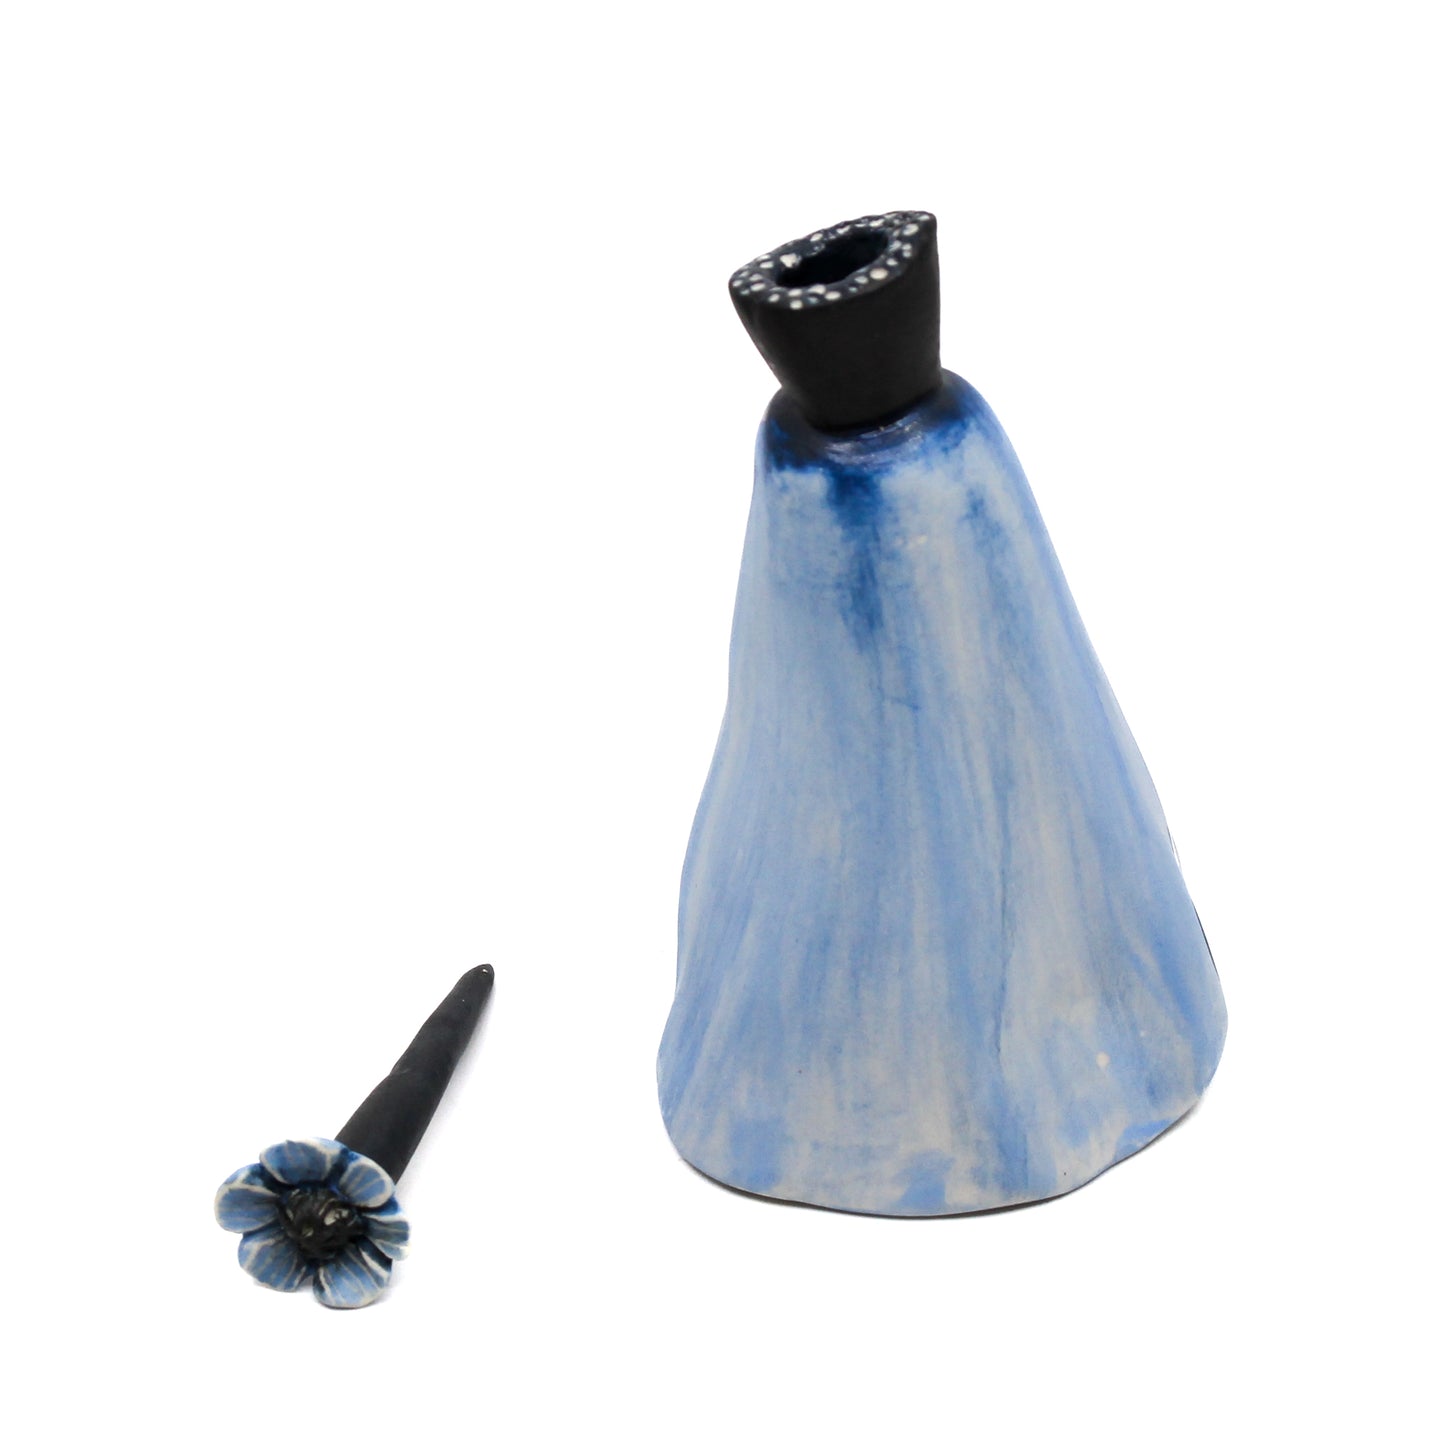 Blue pod bottle with blue flower stem stopper